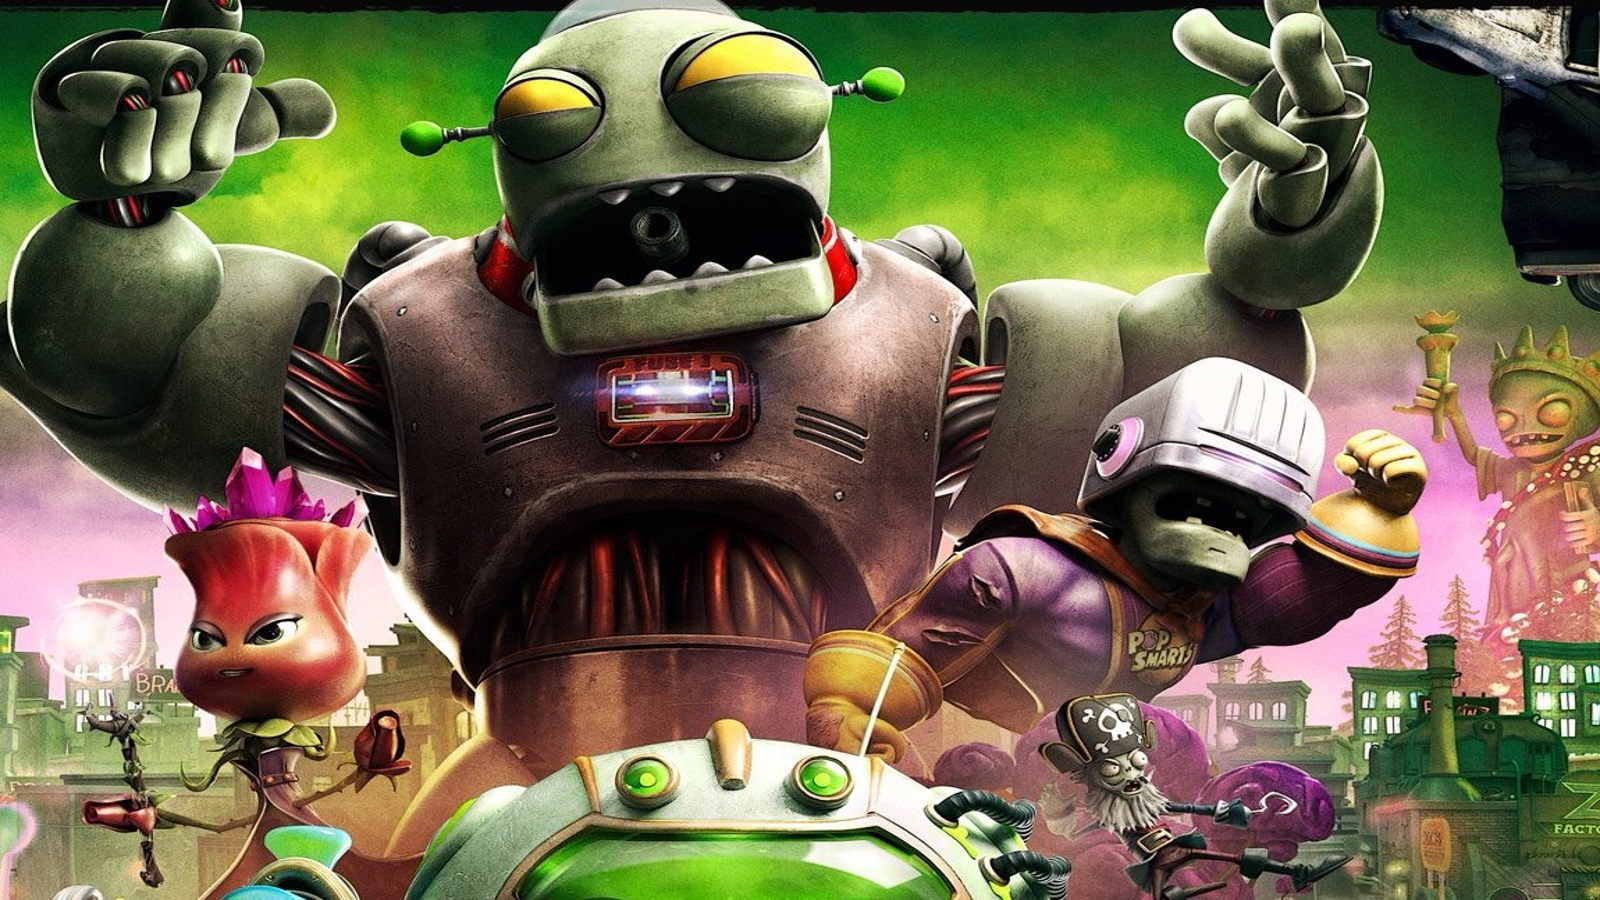 Jogo Plants vs Zombies GW2 - Xbox One